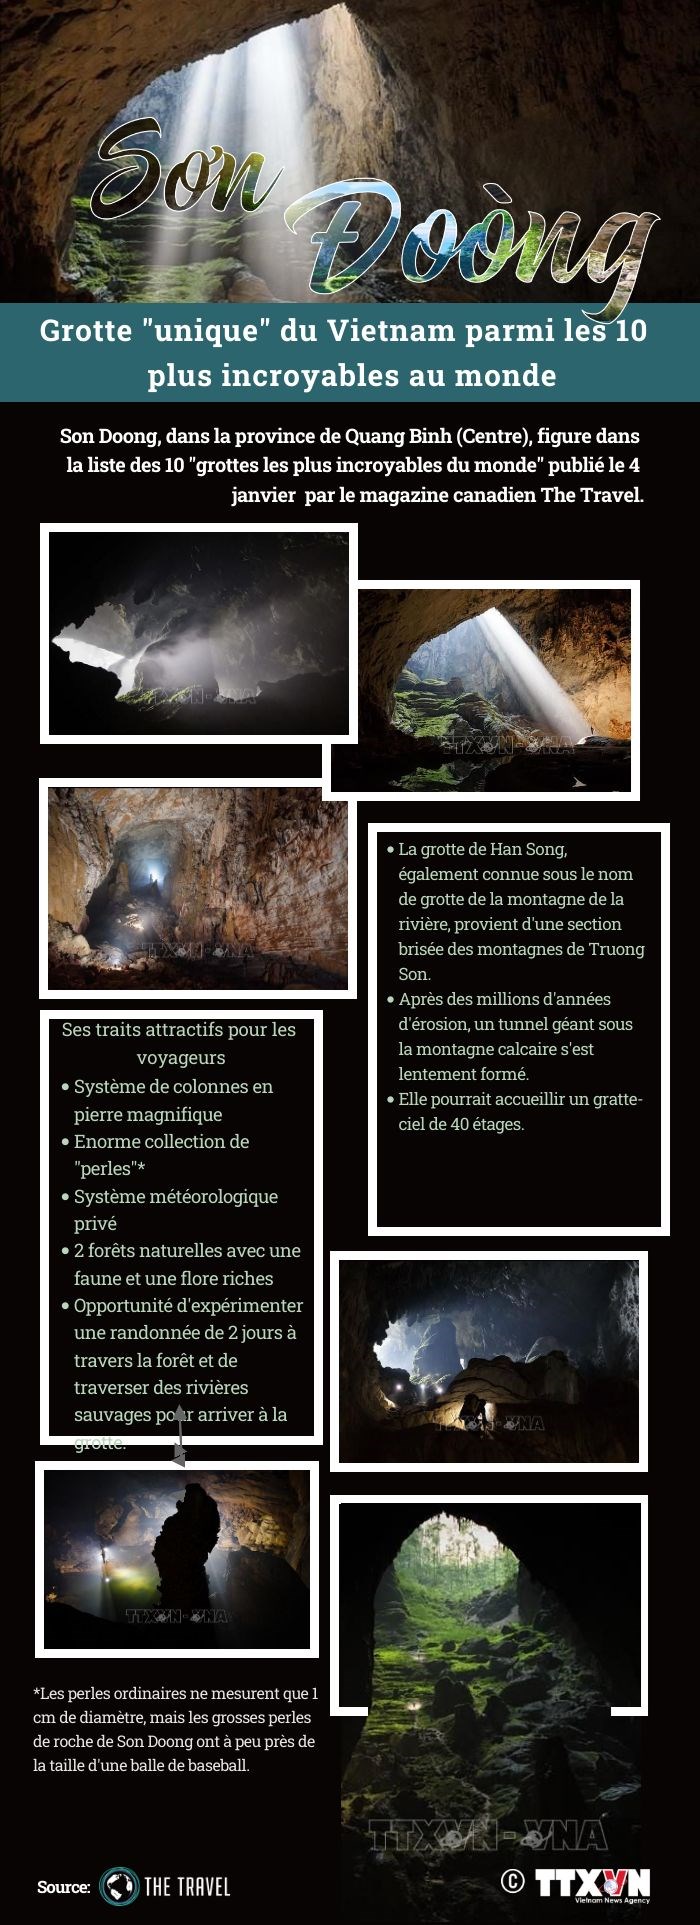 Son Doong - Grotte "unique" du Vietnam parmi les 10 plus incroyables au monde hinh anh 1